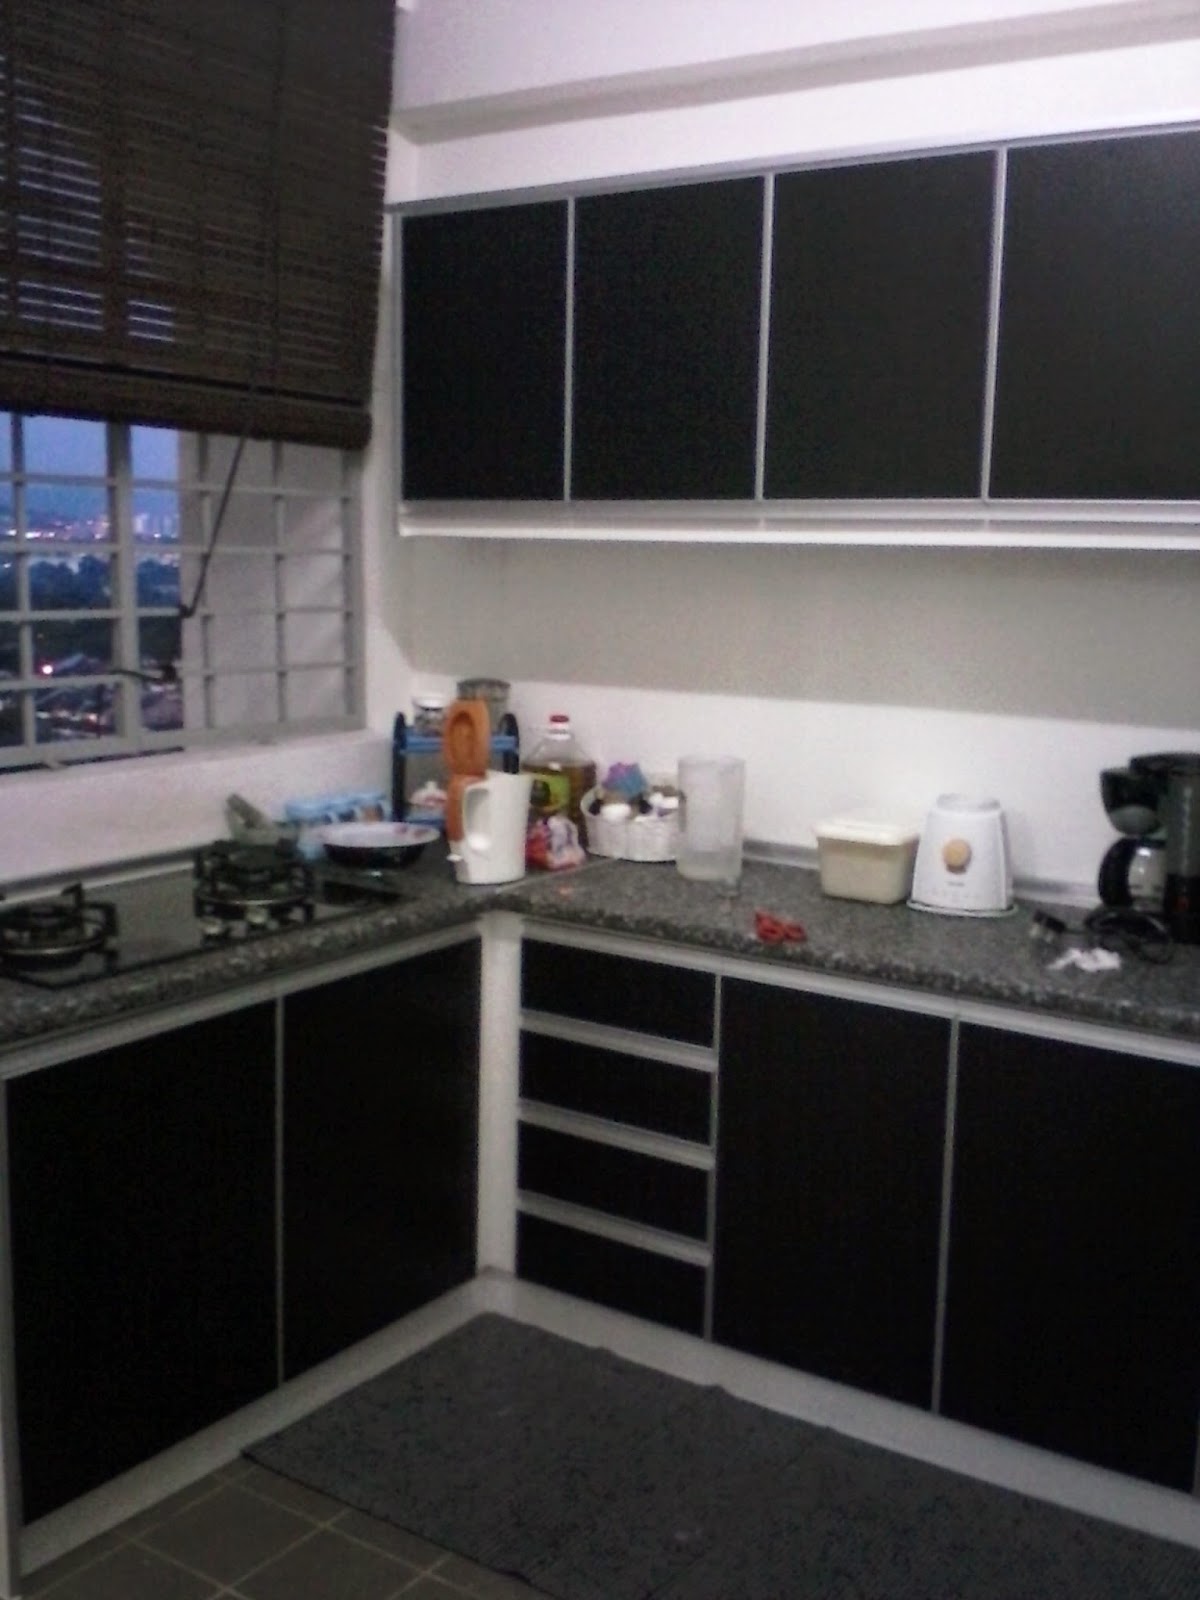  kabinet  dapur  terus dari kilang kabinet  dapur  